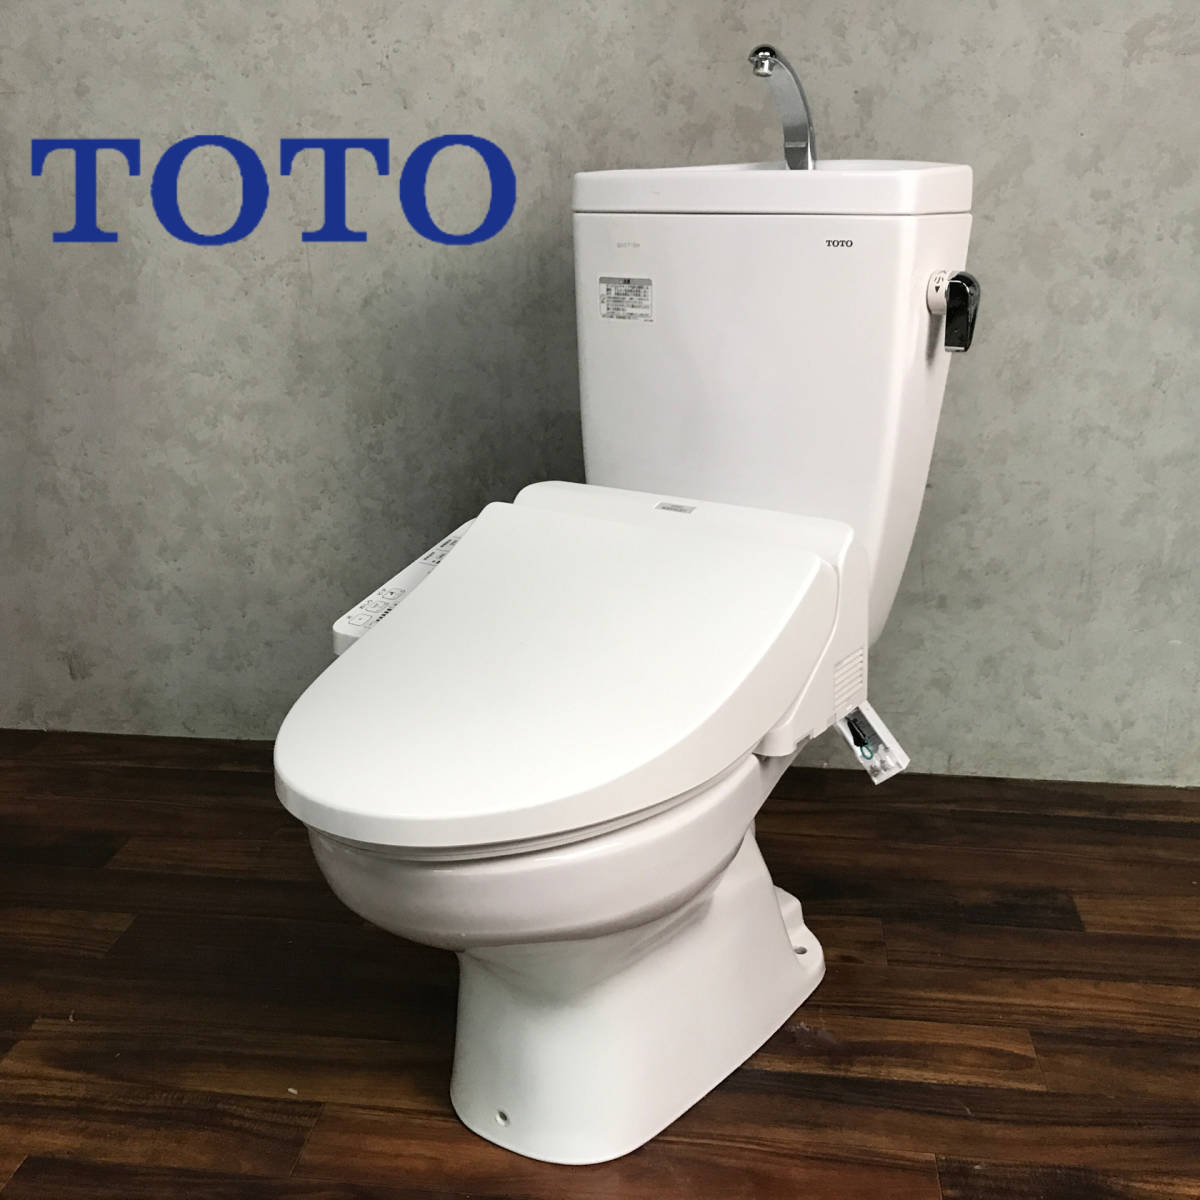 TOTOトイレ便器 洋式便器の値段と価格推移は？｜108件の売買情報を集計 